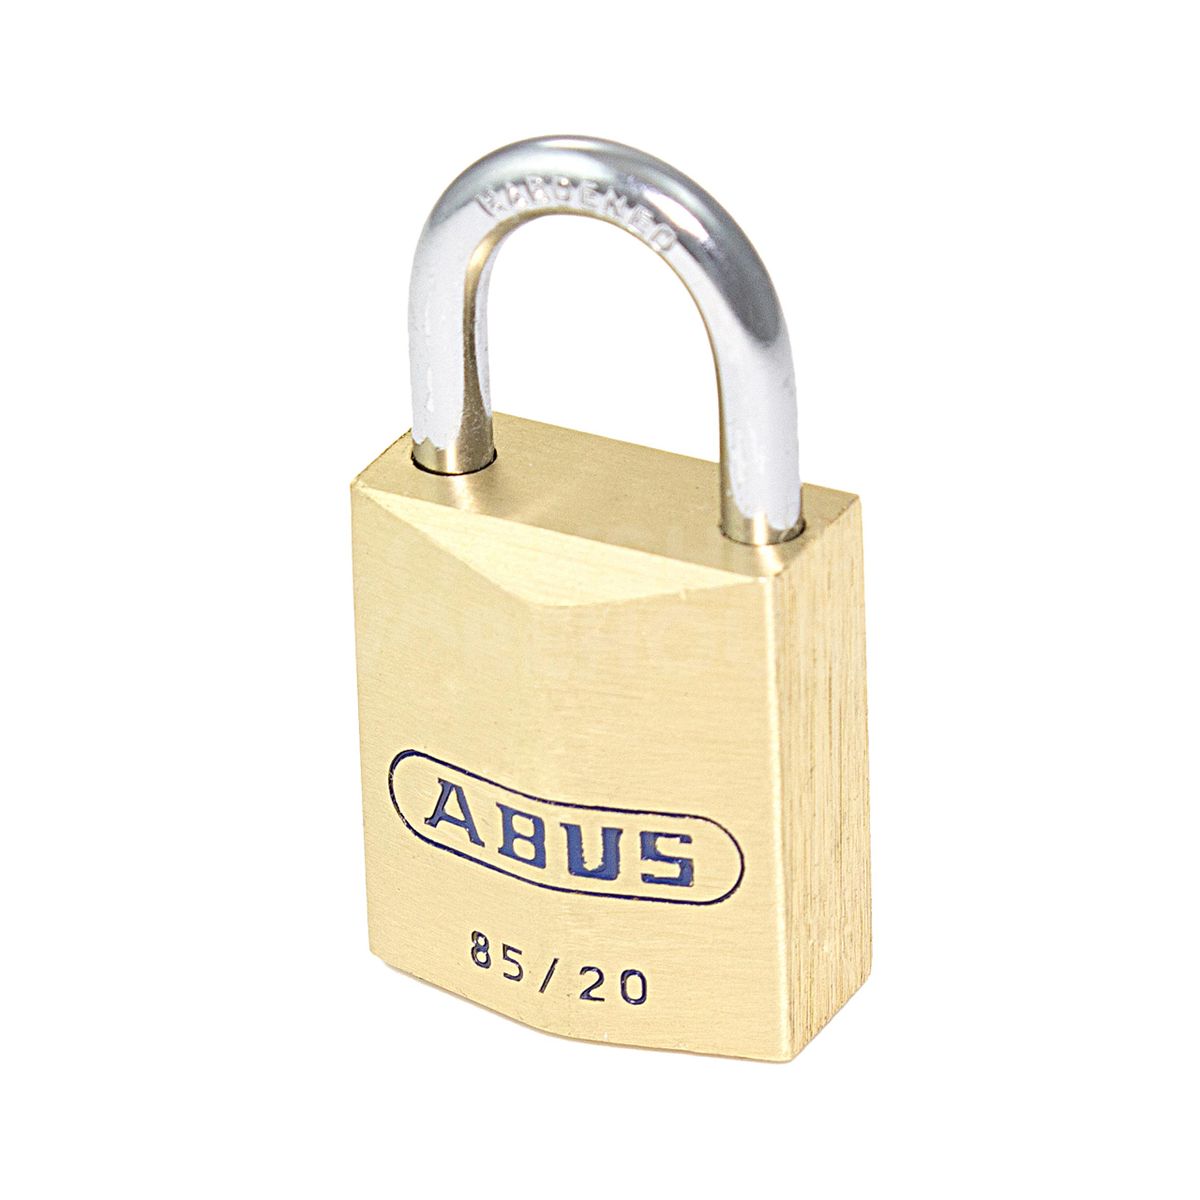 ABUS 85 Series Brass Padlocks